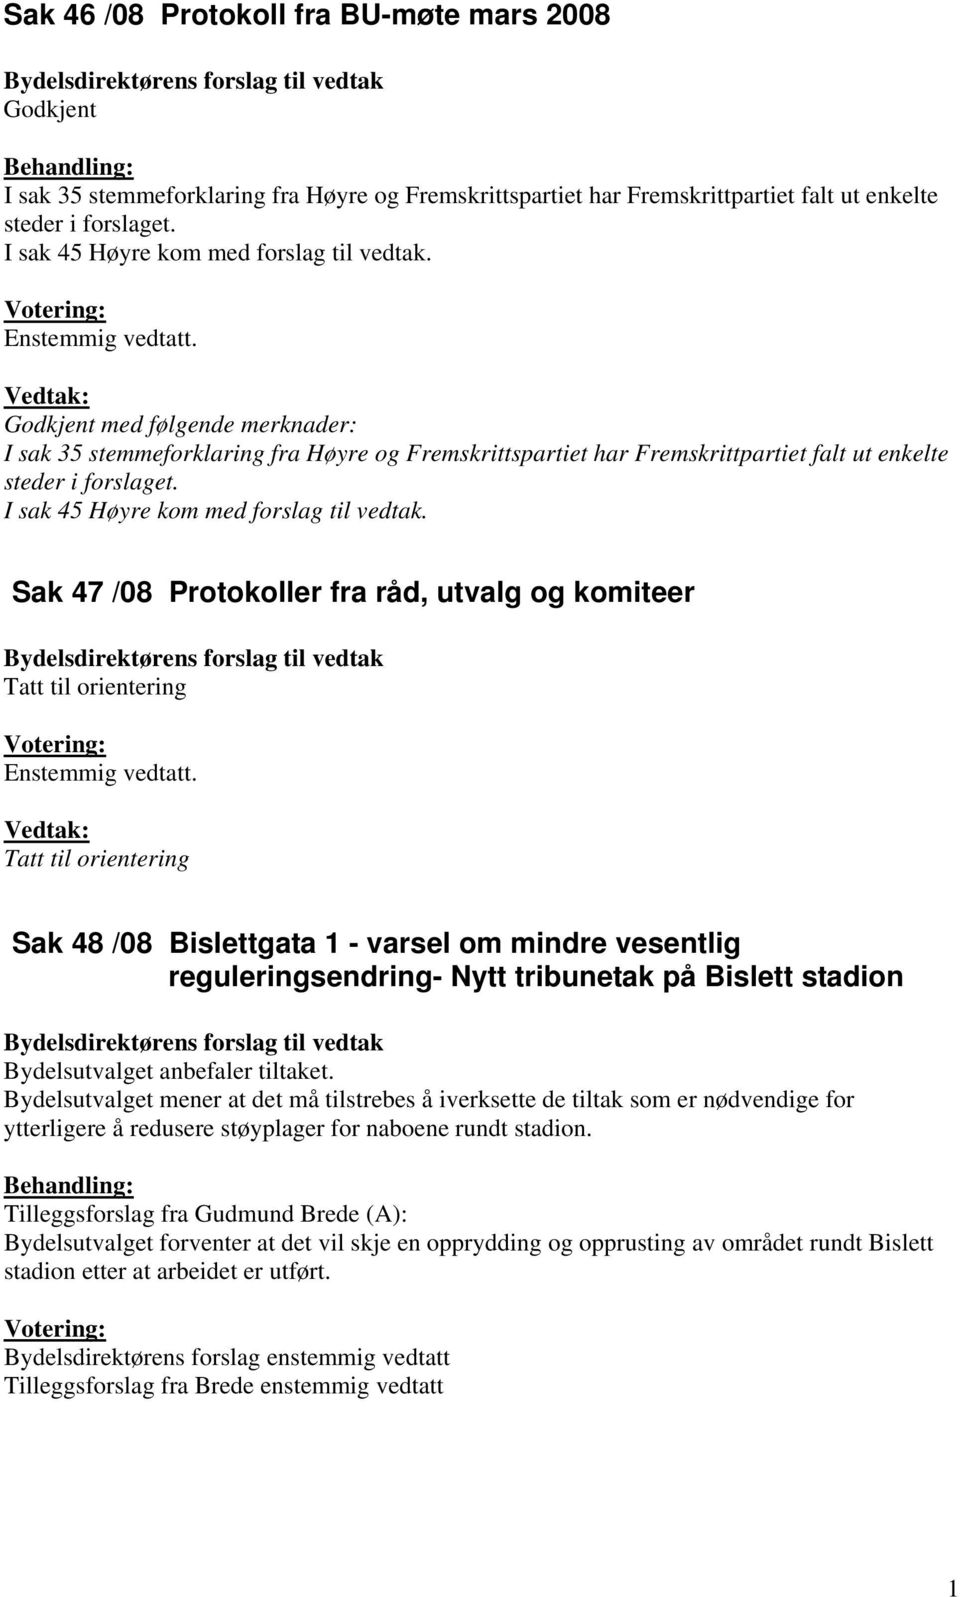 Vedtak: Godkjent med følgende merknader: I sak 35 stemmeforklaring fra Høyre og Fremskrittspartiet har Fremskrittpartiet falt ut enkelte steder i forslaget. I sak 45 Høyre kom med forslag til vedtak.